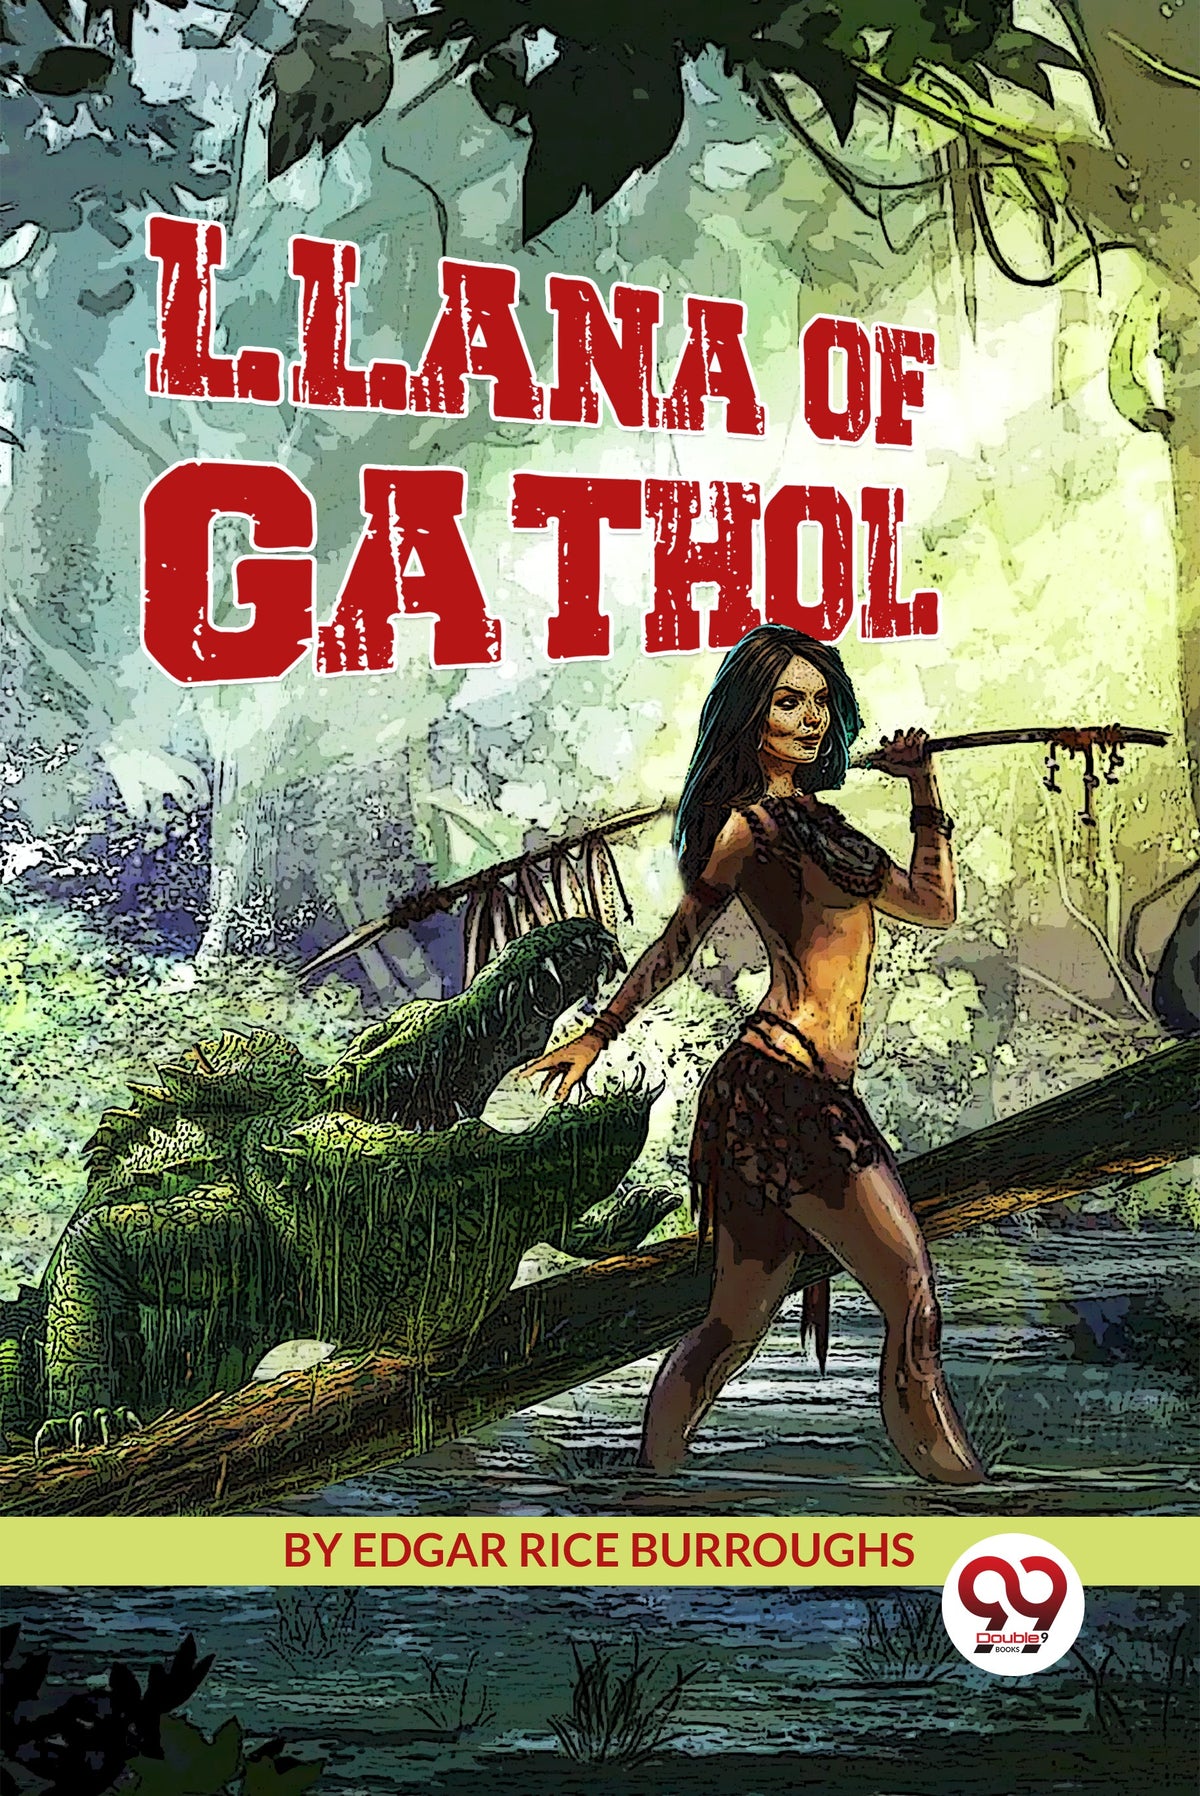 Llana of Gathol